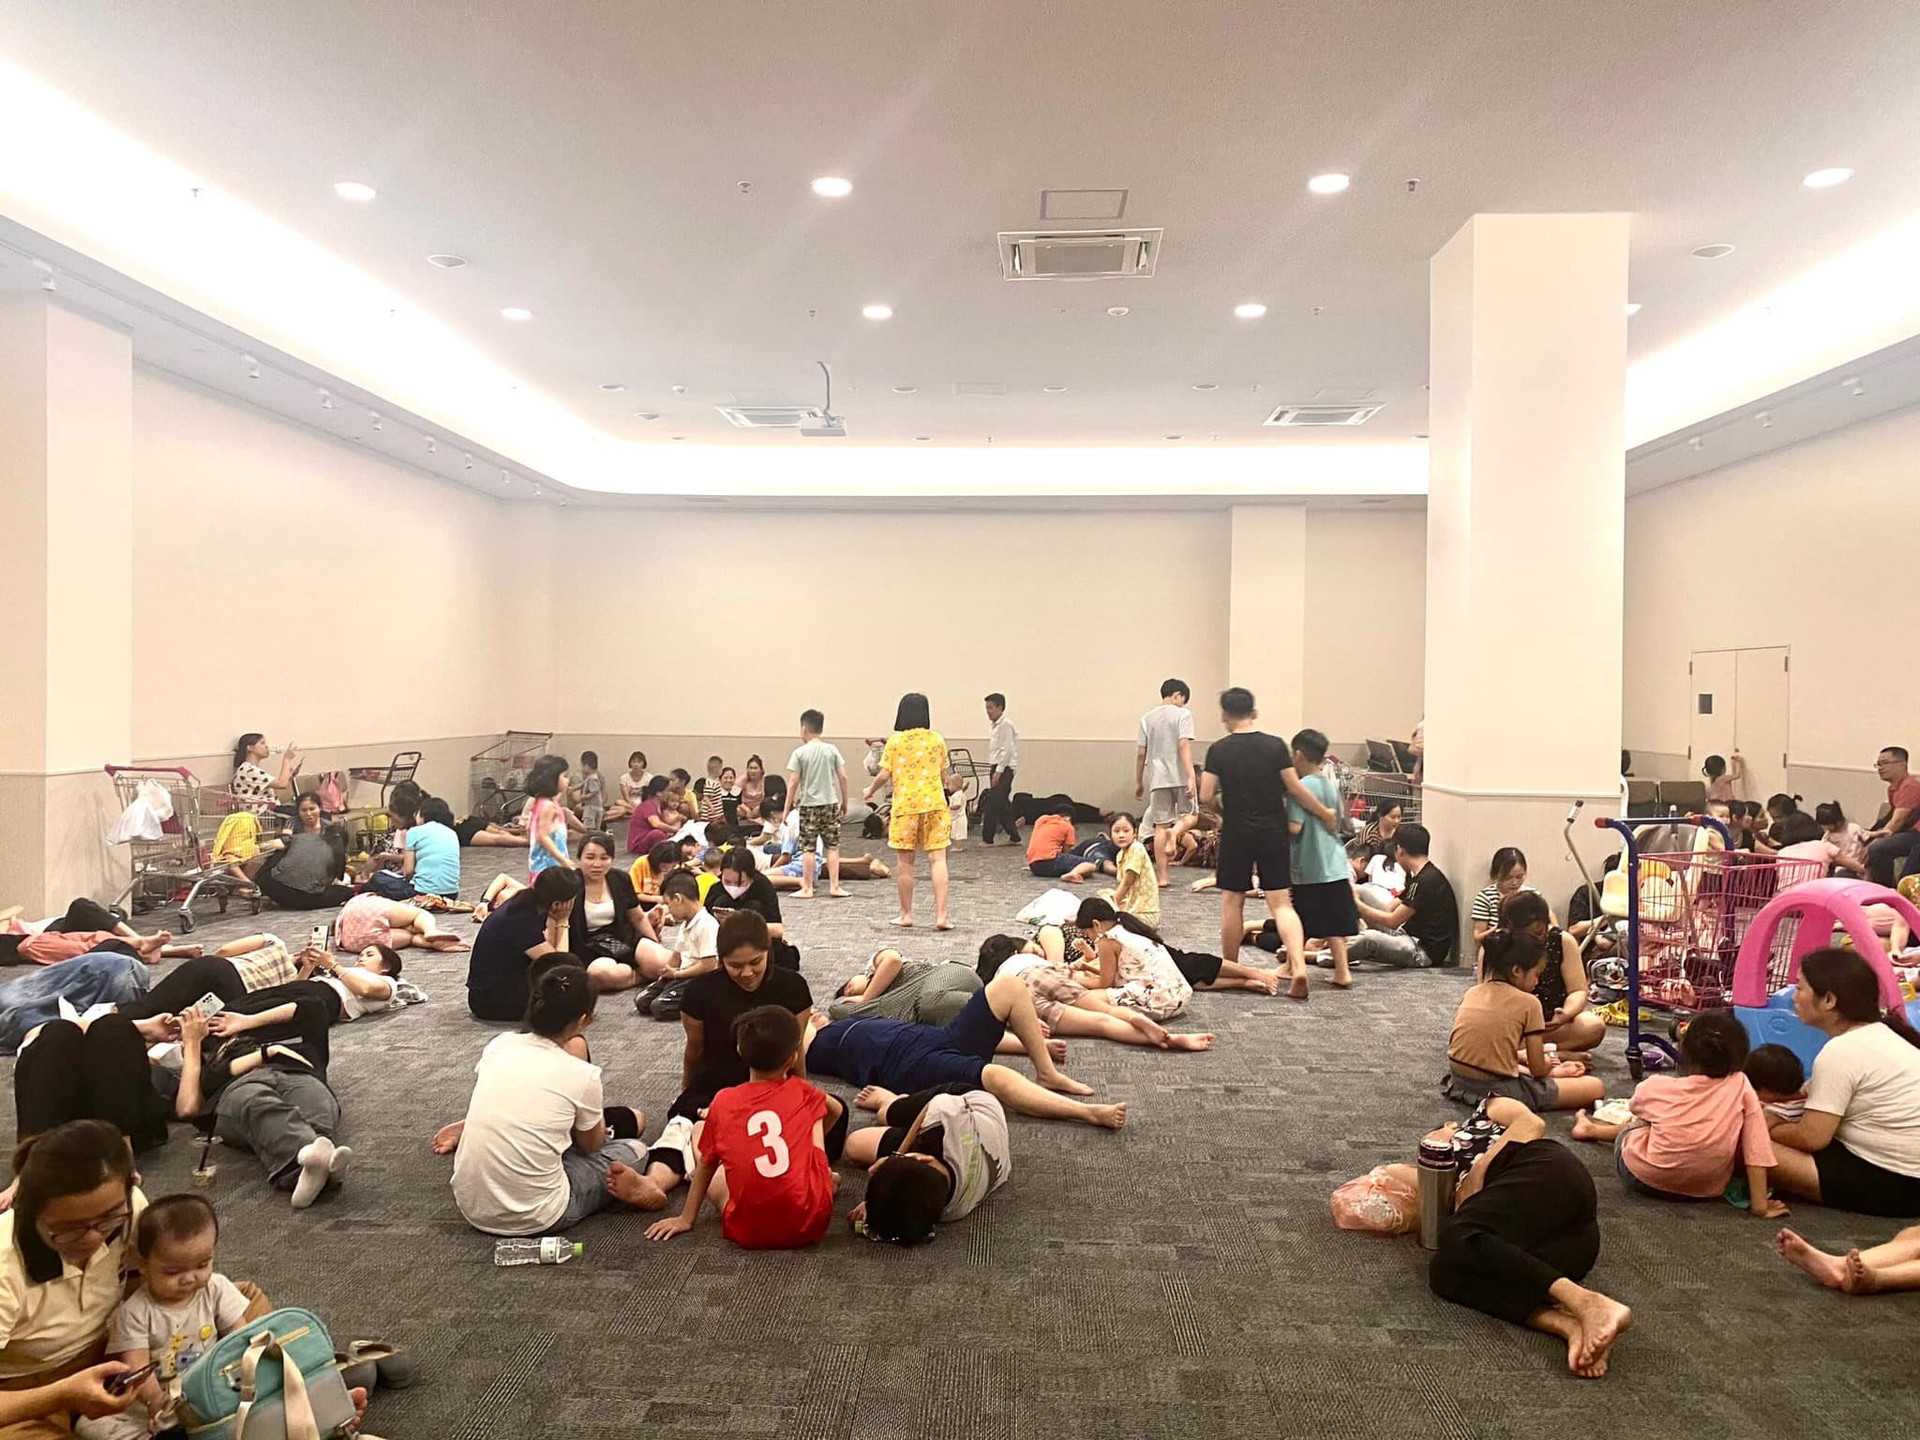 Tinh tế như người Nhật: AEON Mall Long Biên mở hẳn phòng tránh nóng cho khách hàng có chỗ trú chân giữa lúc nhiều nơi bị cắt điện